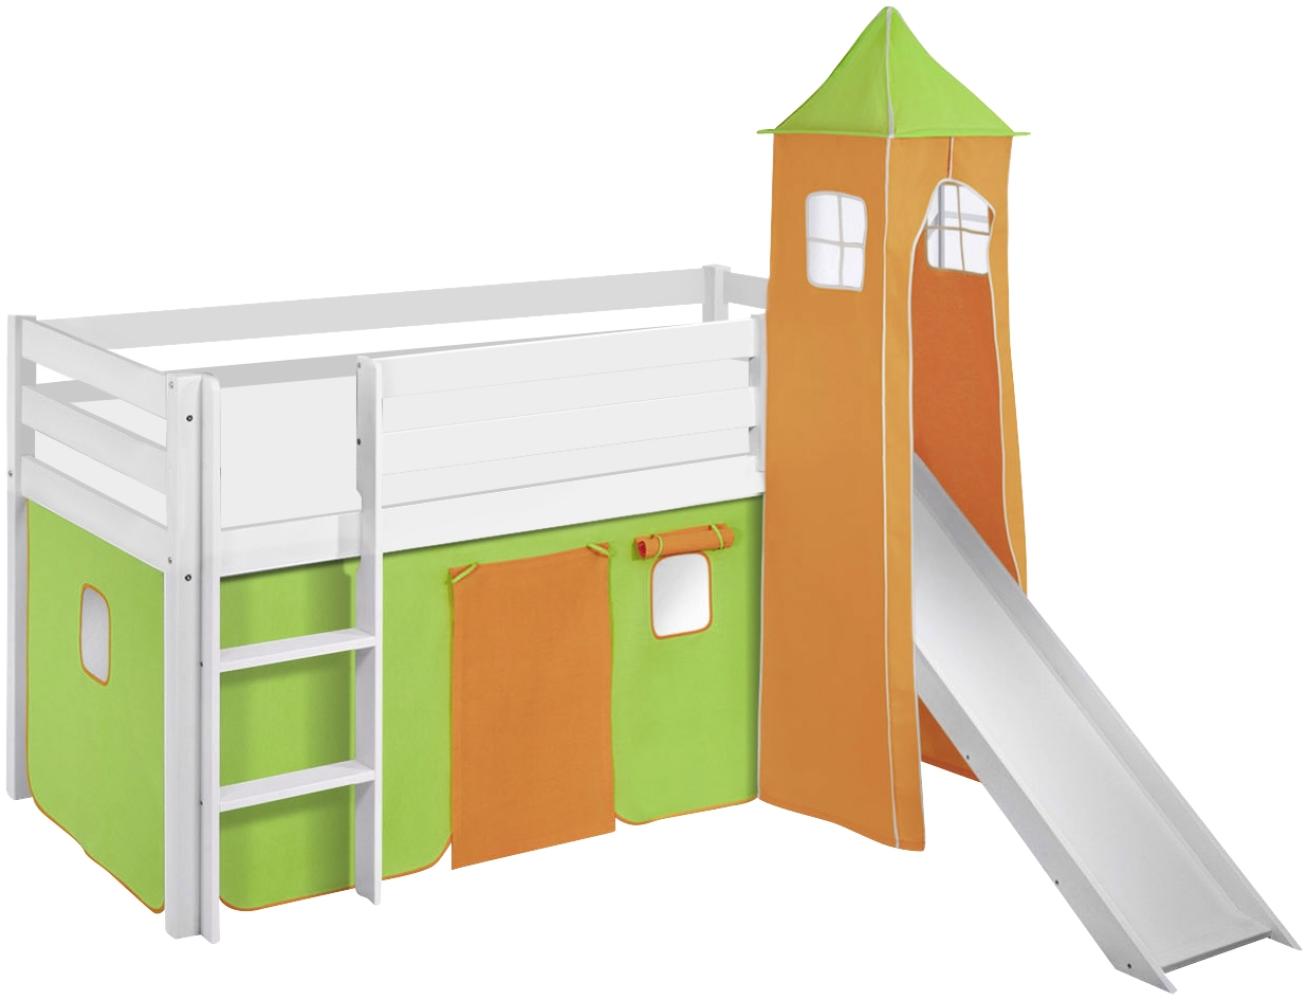 Lilokids 'Jelle' Spielbett 90 x 190 cm, Grün Orange, Kiefer massiv, mit Turm, Rutsche und Vorhang Bild 1